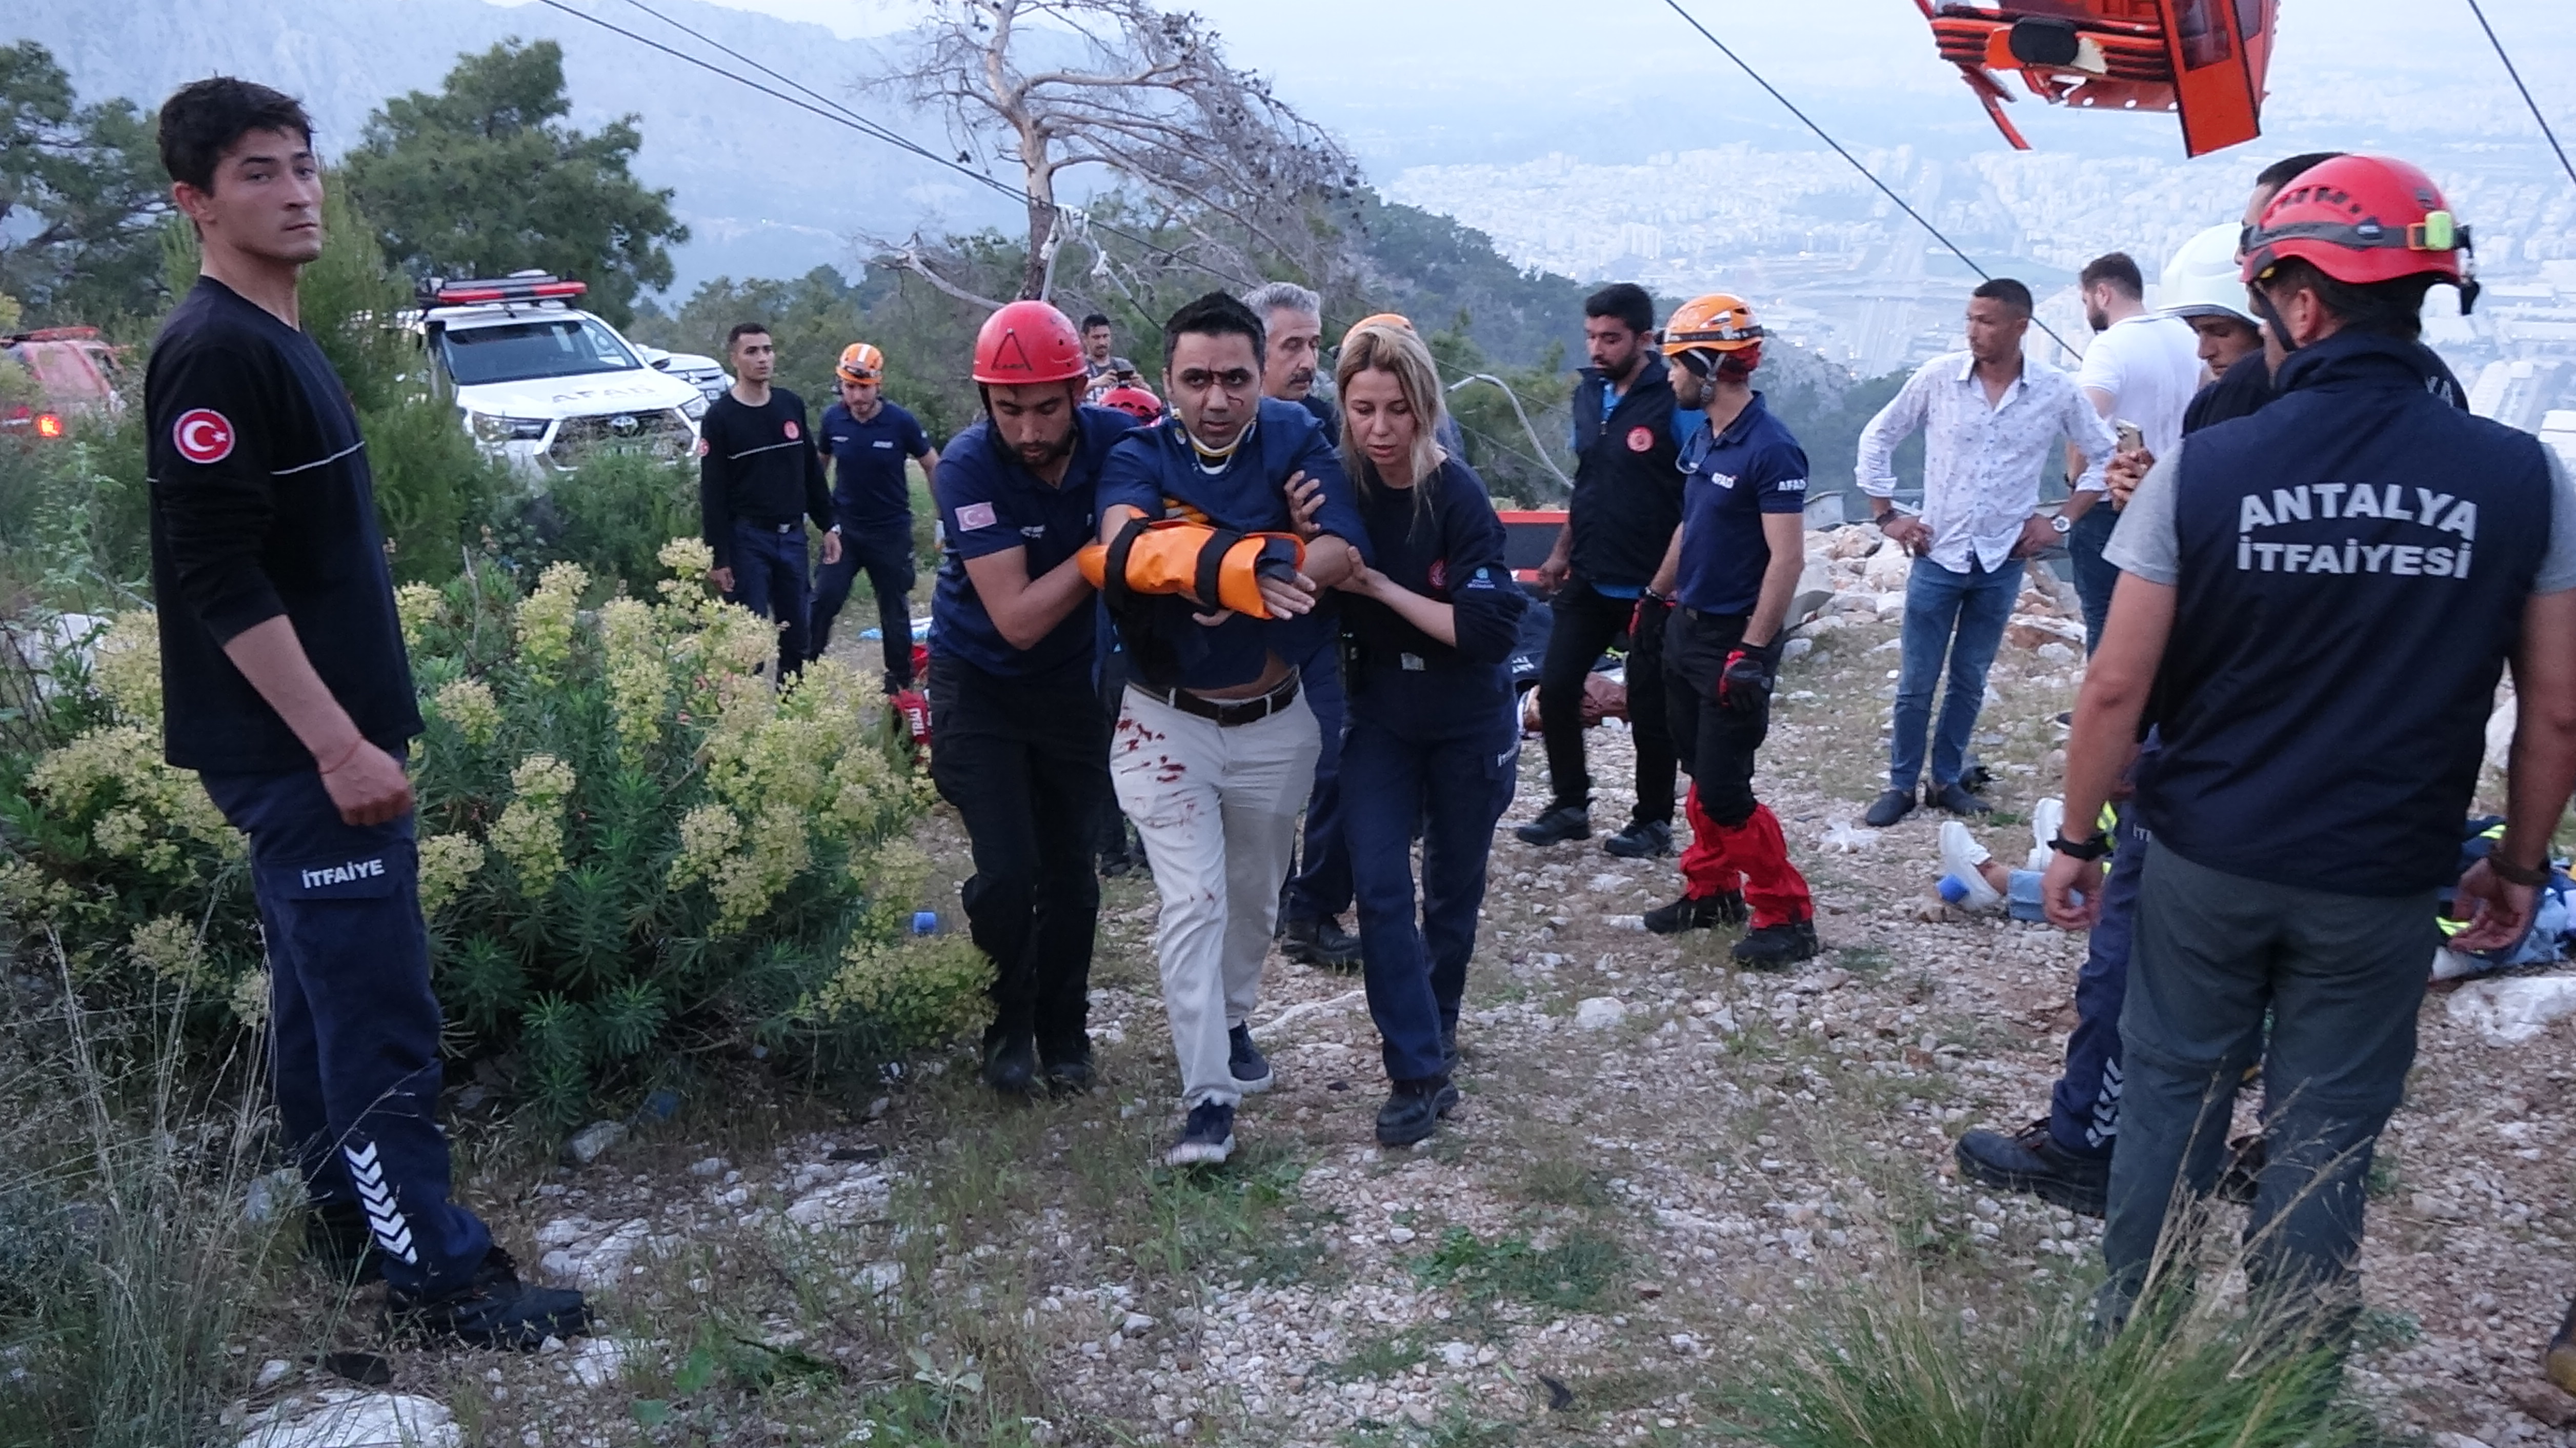 Afet ve Acil Durum Yönetimi Başkanlığı (AFAD), Antalya'daki teleferik kazasında kurtarma çalışmalarının profesyonel ekipler tarafından sürdürüldüğünü bildirdi. Kazada, 1 kişinin hayatını kaybettiği, 7 kişinin ise yaralandığı aktarılarak, yaralılara ilk müdahalenin sağlık ekiplerince gerçekleştirildiği ve helikopterle hastaneye sevk edildikleri bildirildi.